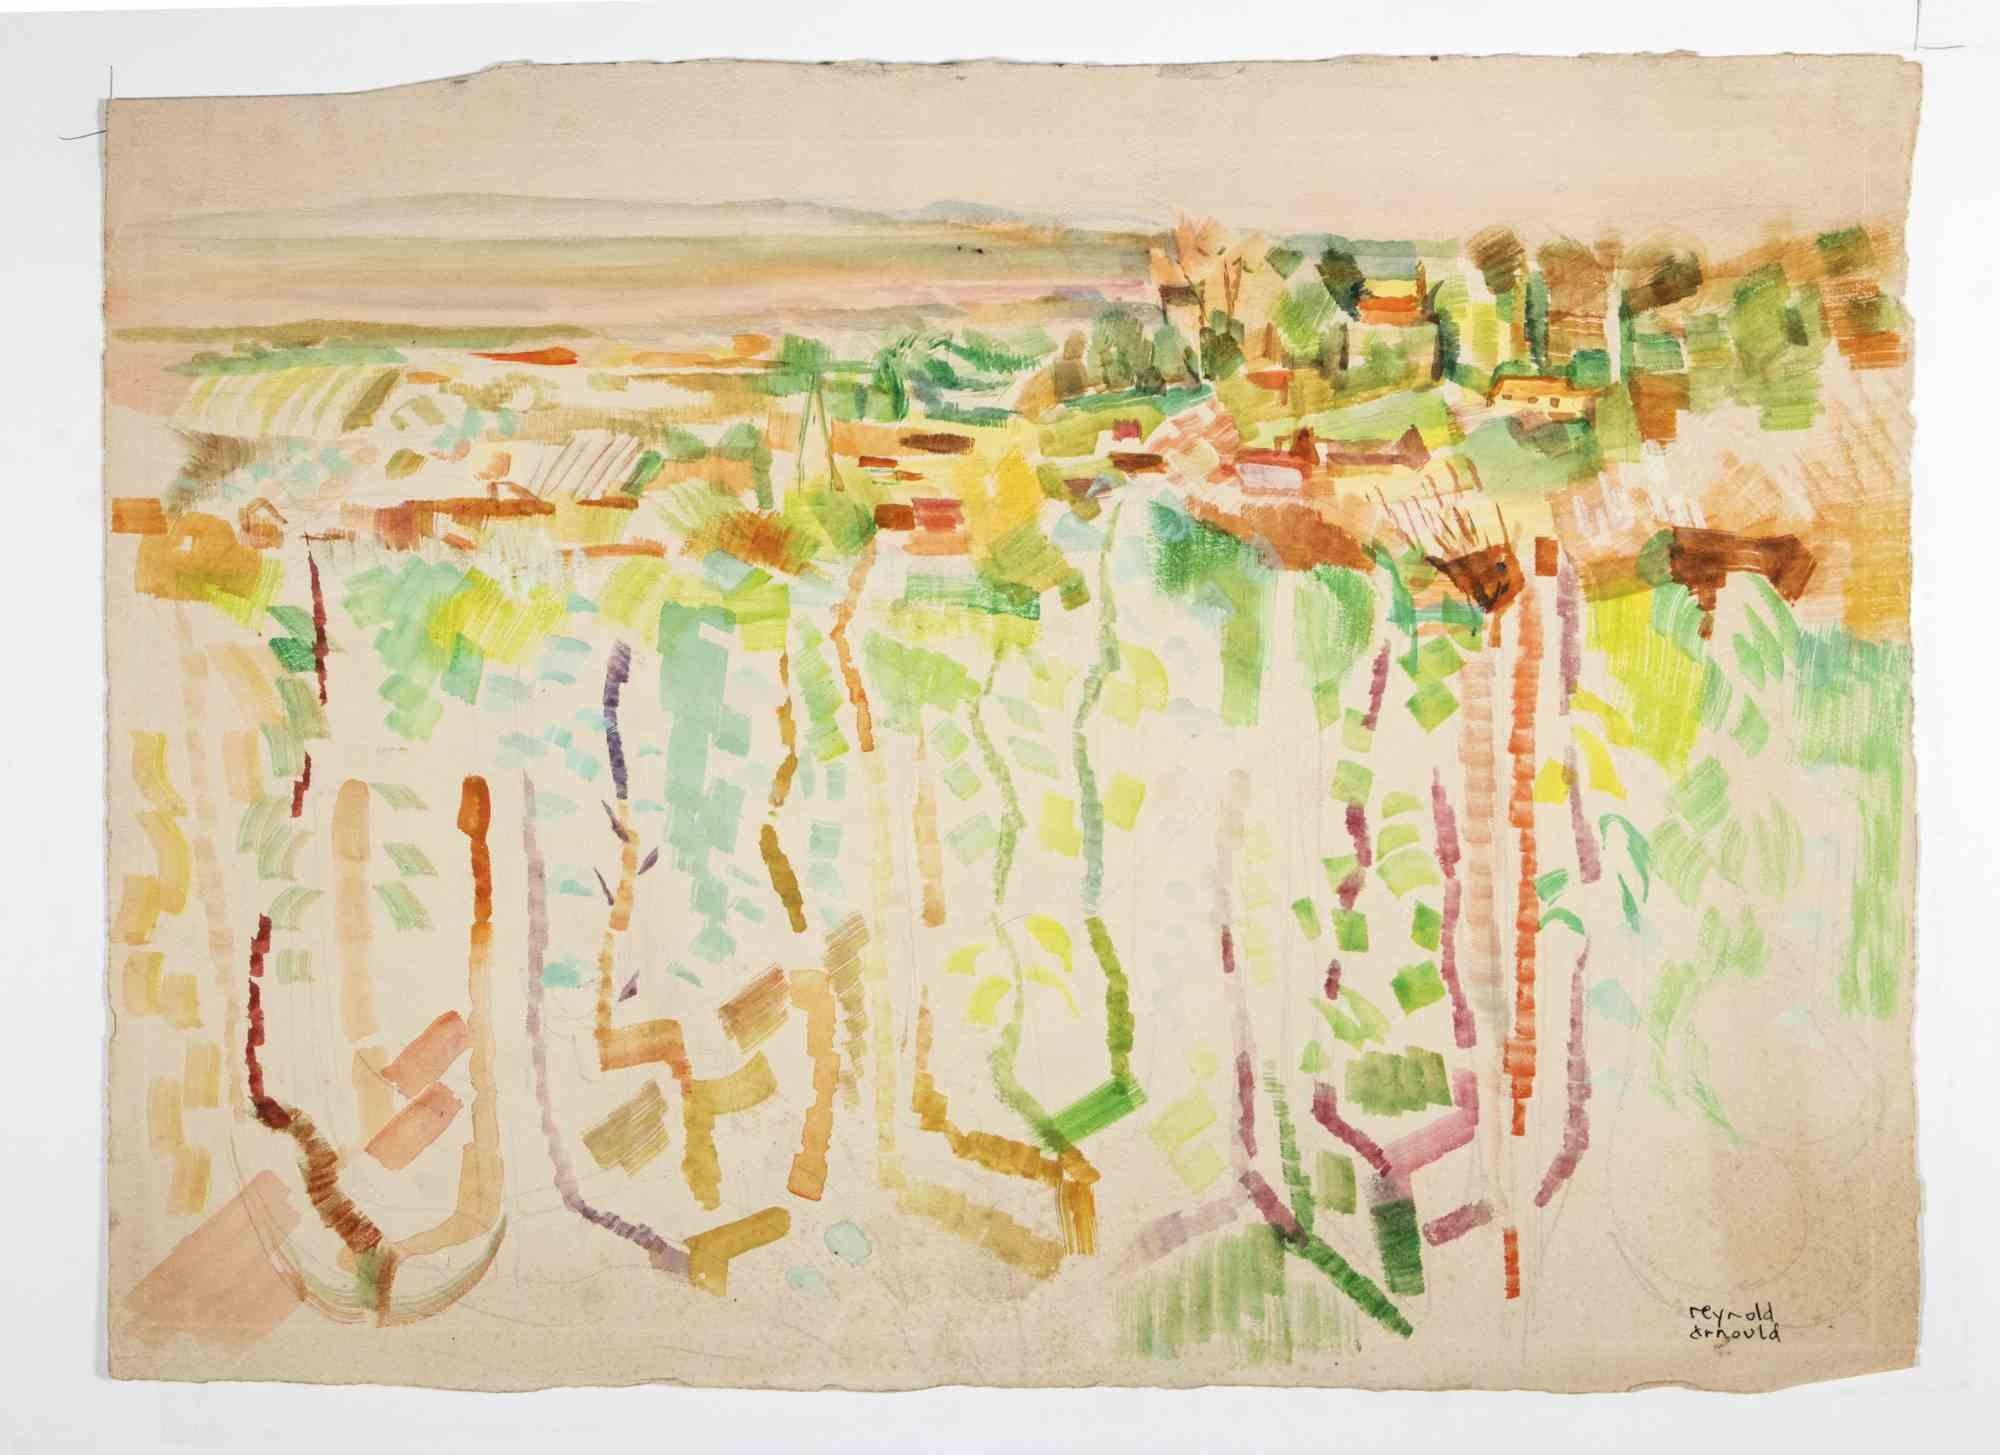 Paysage est un dessin à l'aquarelle réalisé par Reynold Arnould  (Le Havre 1919 - Parigi 1980).

En bon état, il est accompagné d'un passe-partout en carton blanc (70x51 cm).

Signé à la main dans le coin inférieur droit.

Reynold Arnould est né au